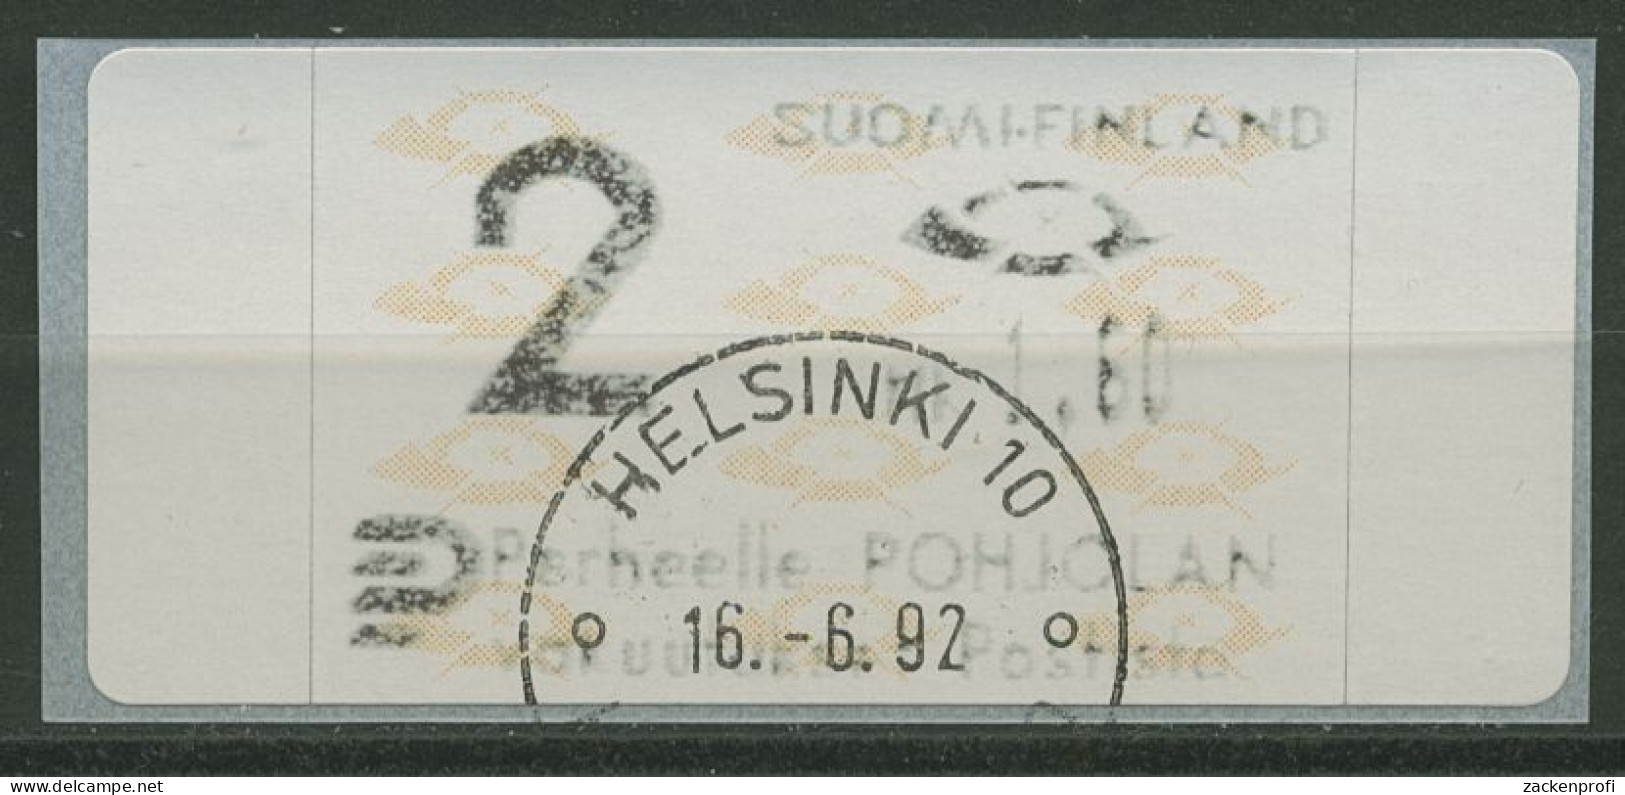 Finnland Automatenmarken 1992 Posthörner Einzelwert ATM 12.3 Z2 Gestempelt - Timbres De Distributeurs [ATM]